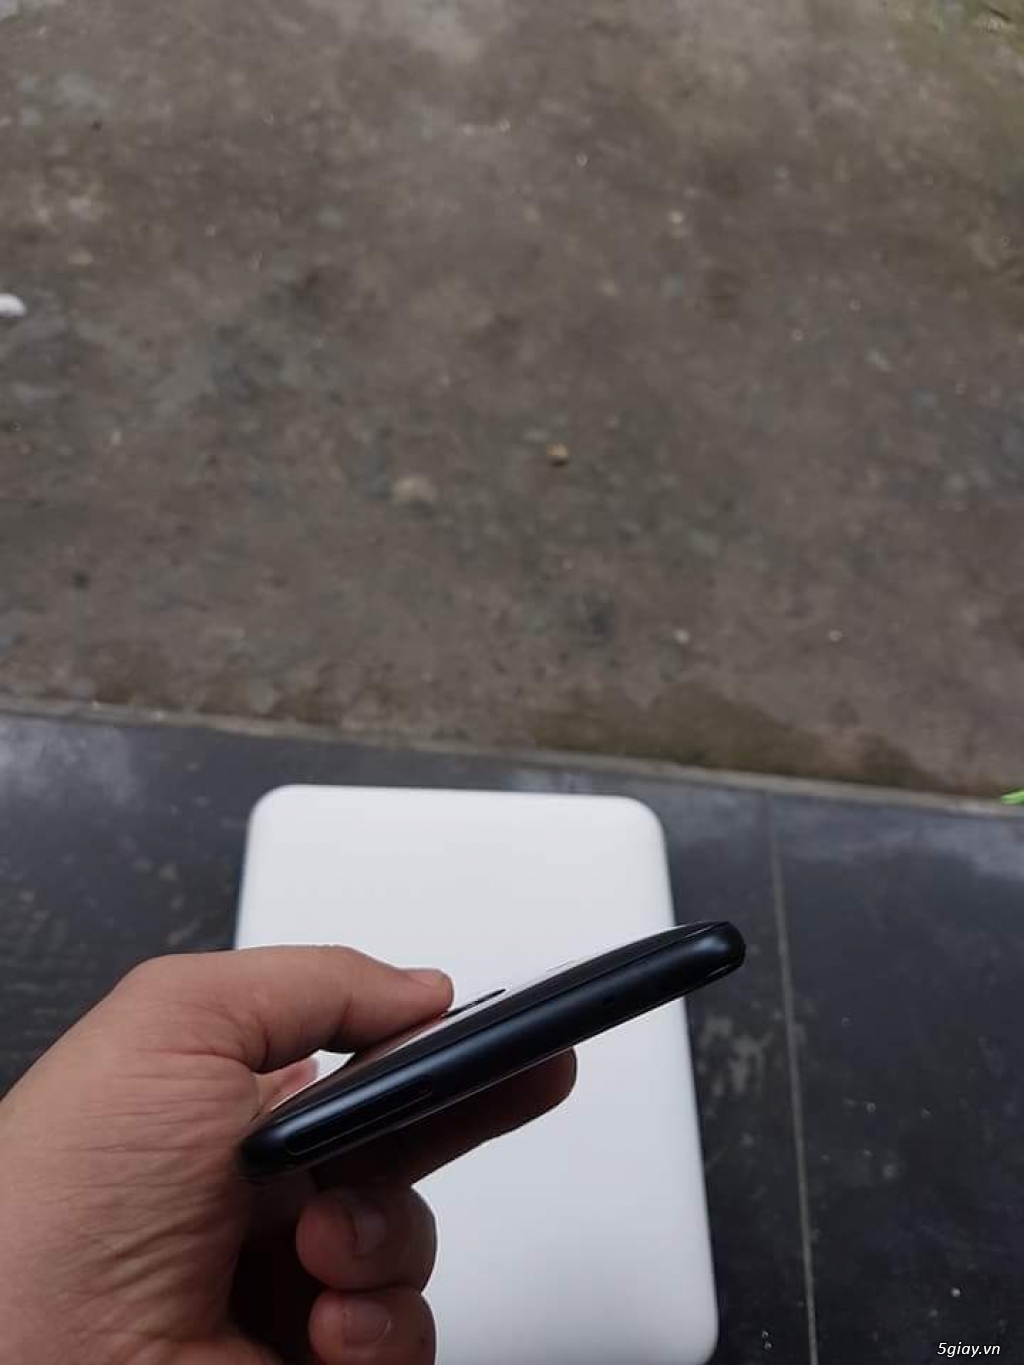 HTC U11 đen 2 sim, hàng HTC Việt Nam bảo hành 8/2018 có bh vàng rơi vỡ - 4